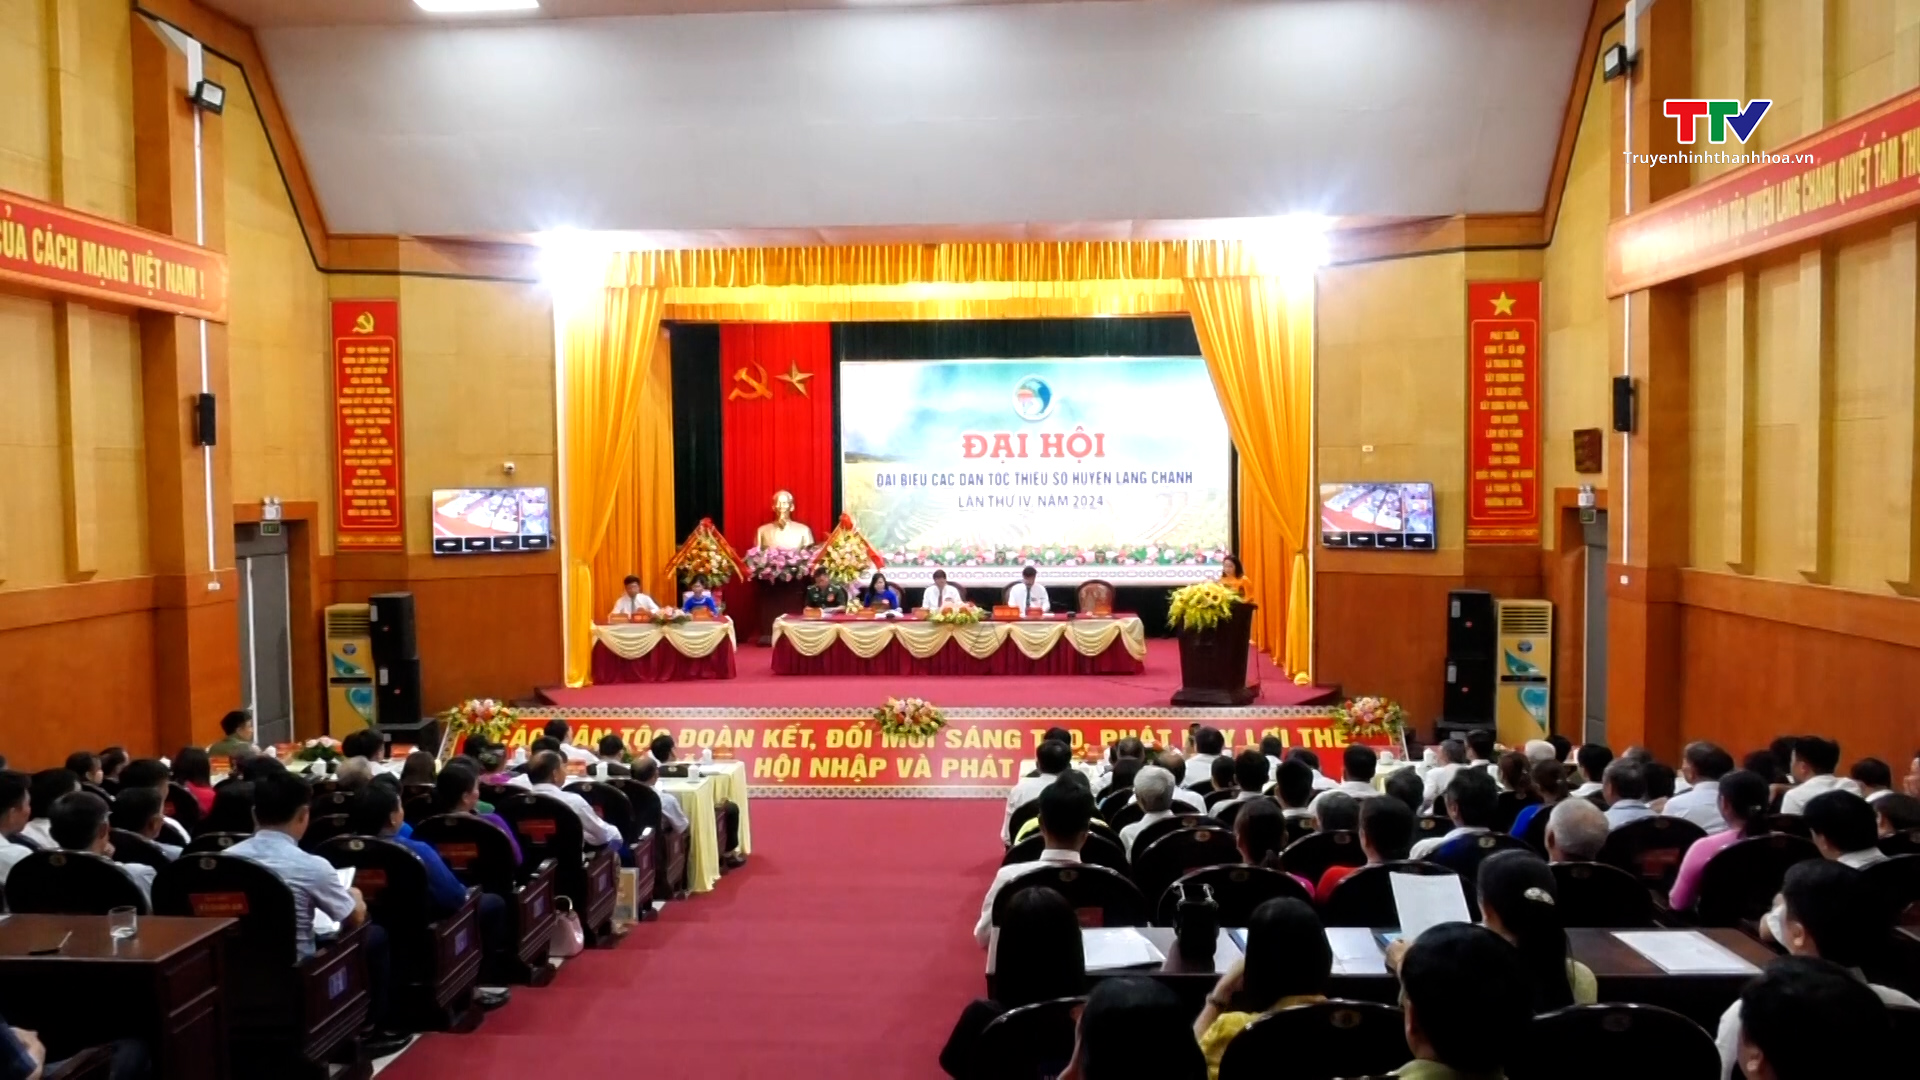 Đại hội Đại biểu các dân tộc thiểu số huyện Lang Chánh lần thứ IV, năm 2024- Ảnh 1.